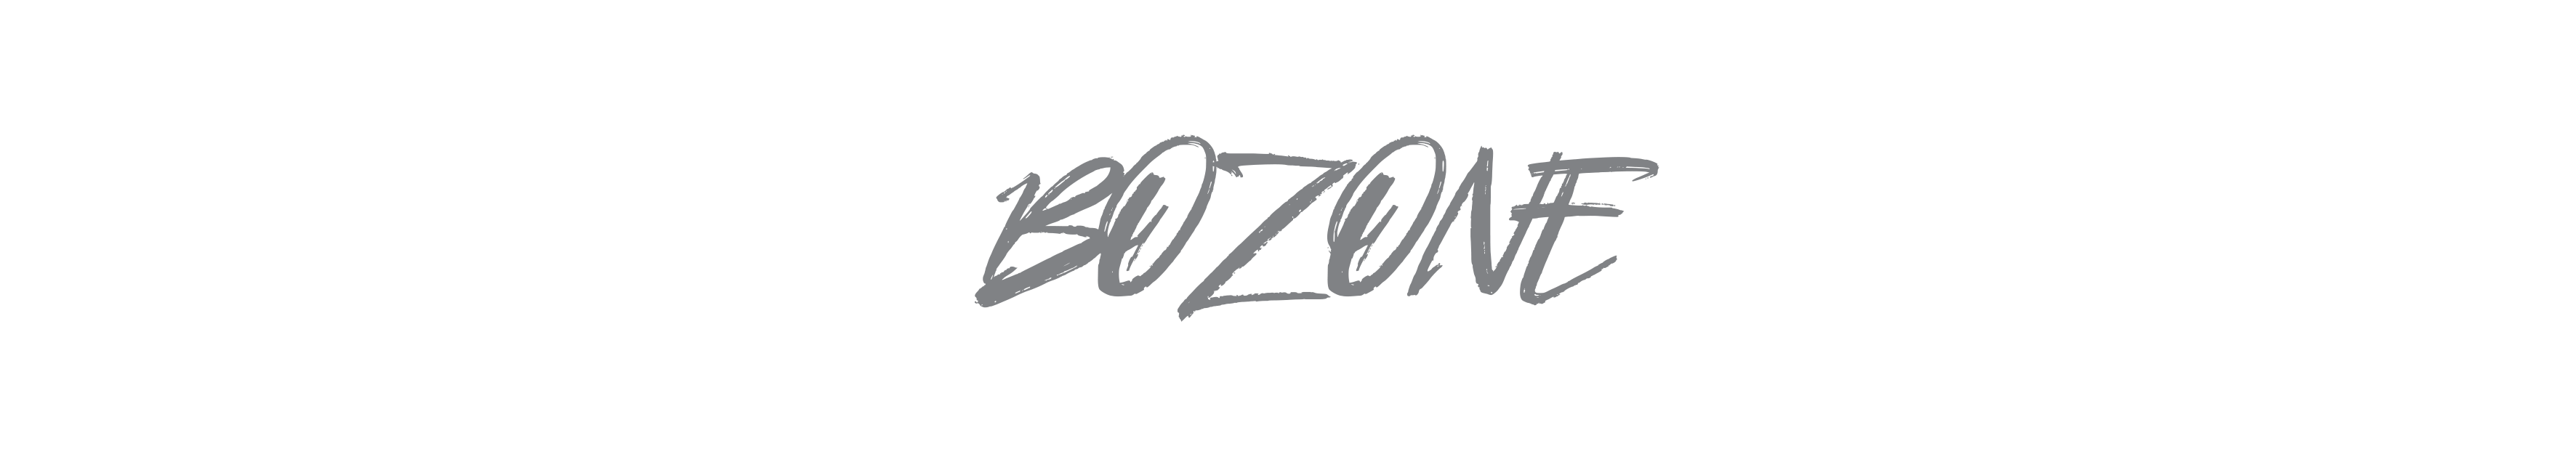 bozone music mixboss footer logo